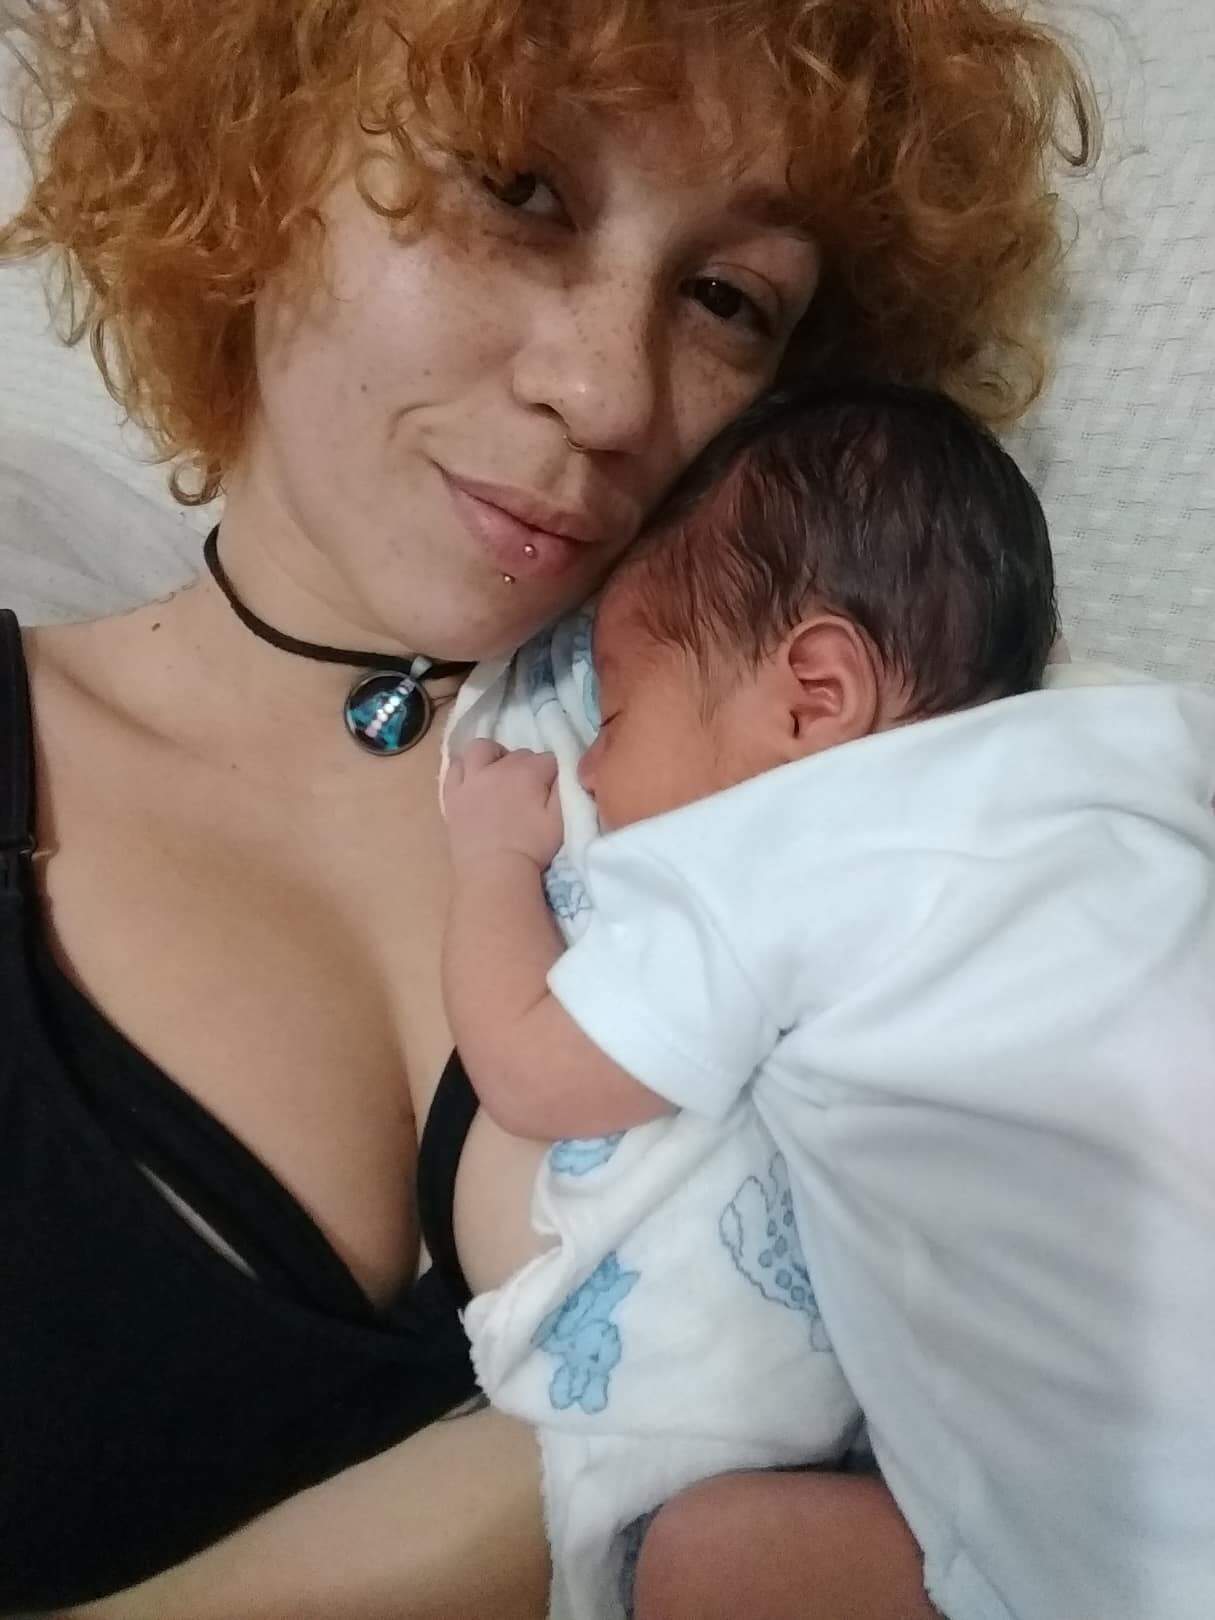 Artesã foi vítima de violência obstétrica em seu segundo parto 